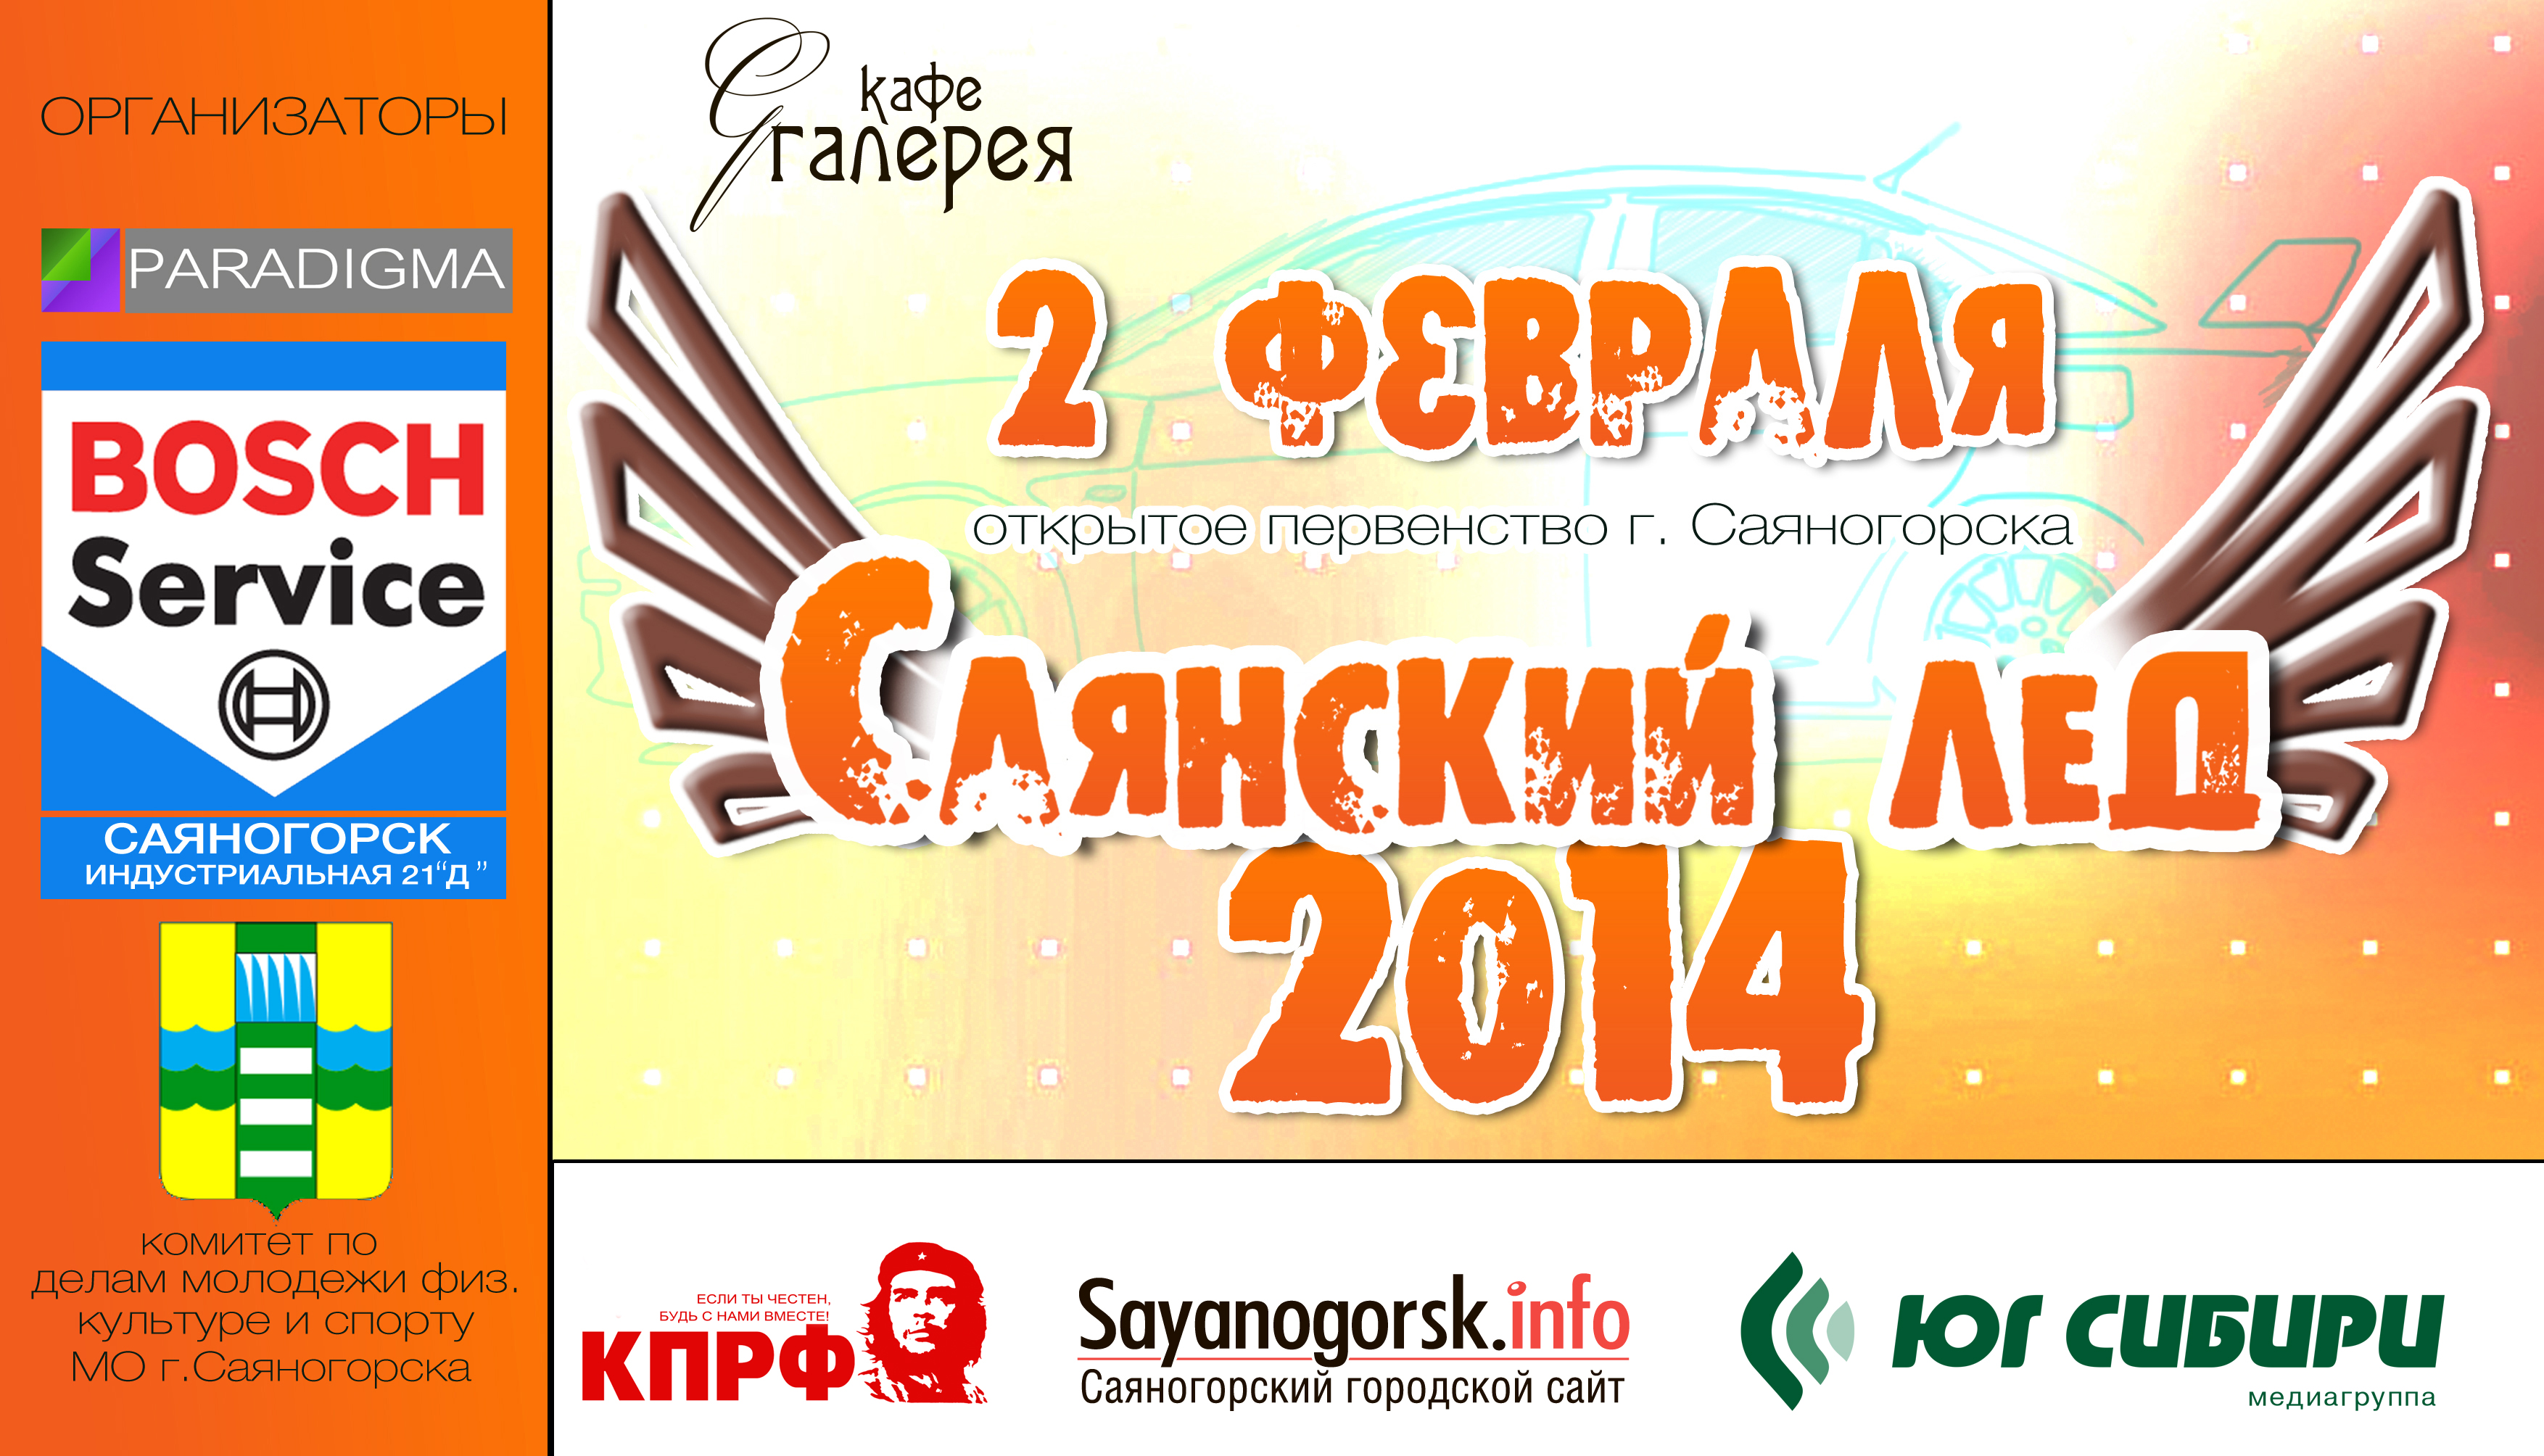 Саяногорск Инфо - logo-2014-new.jpg, Скачано: 1514